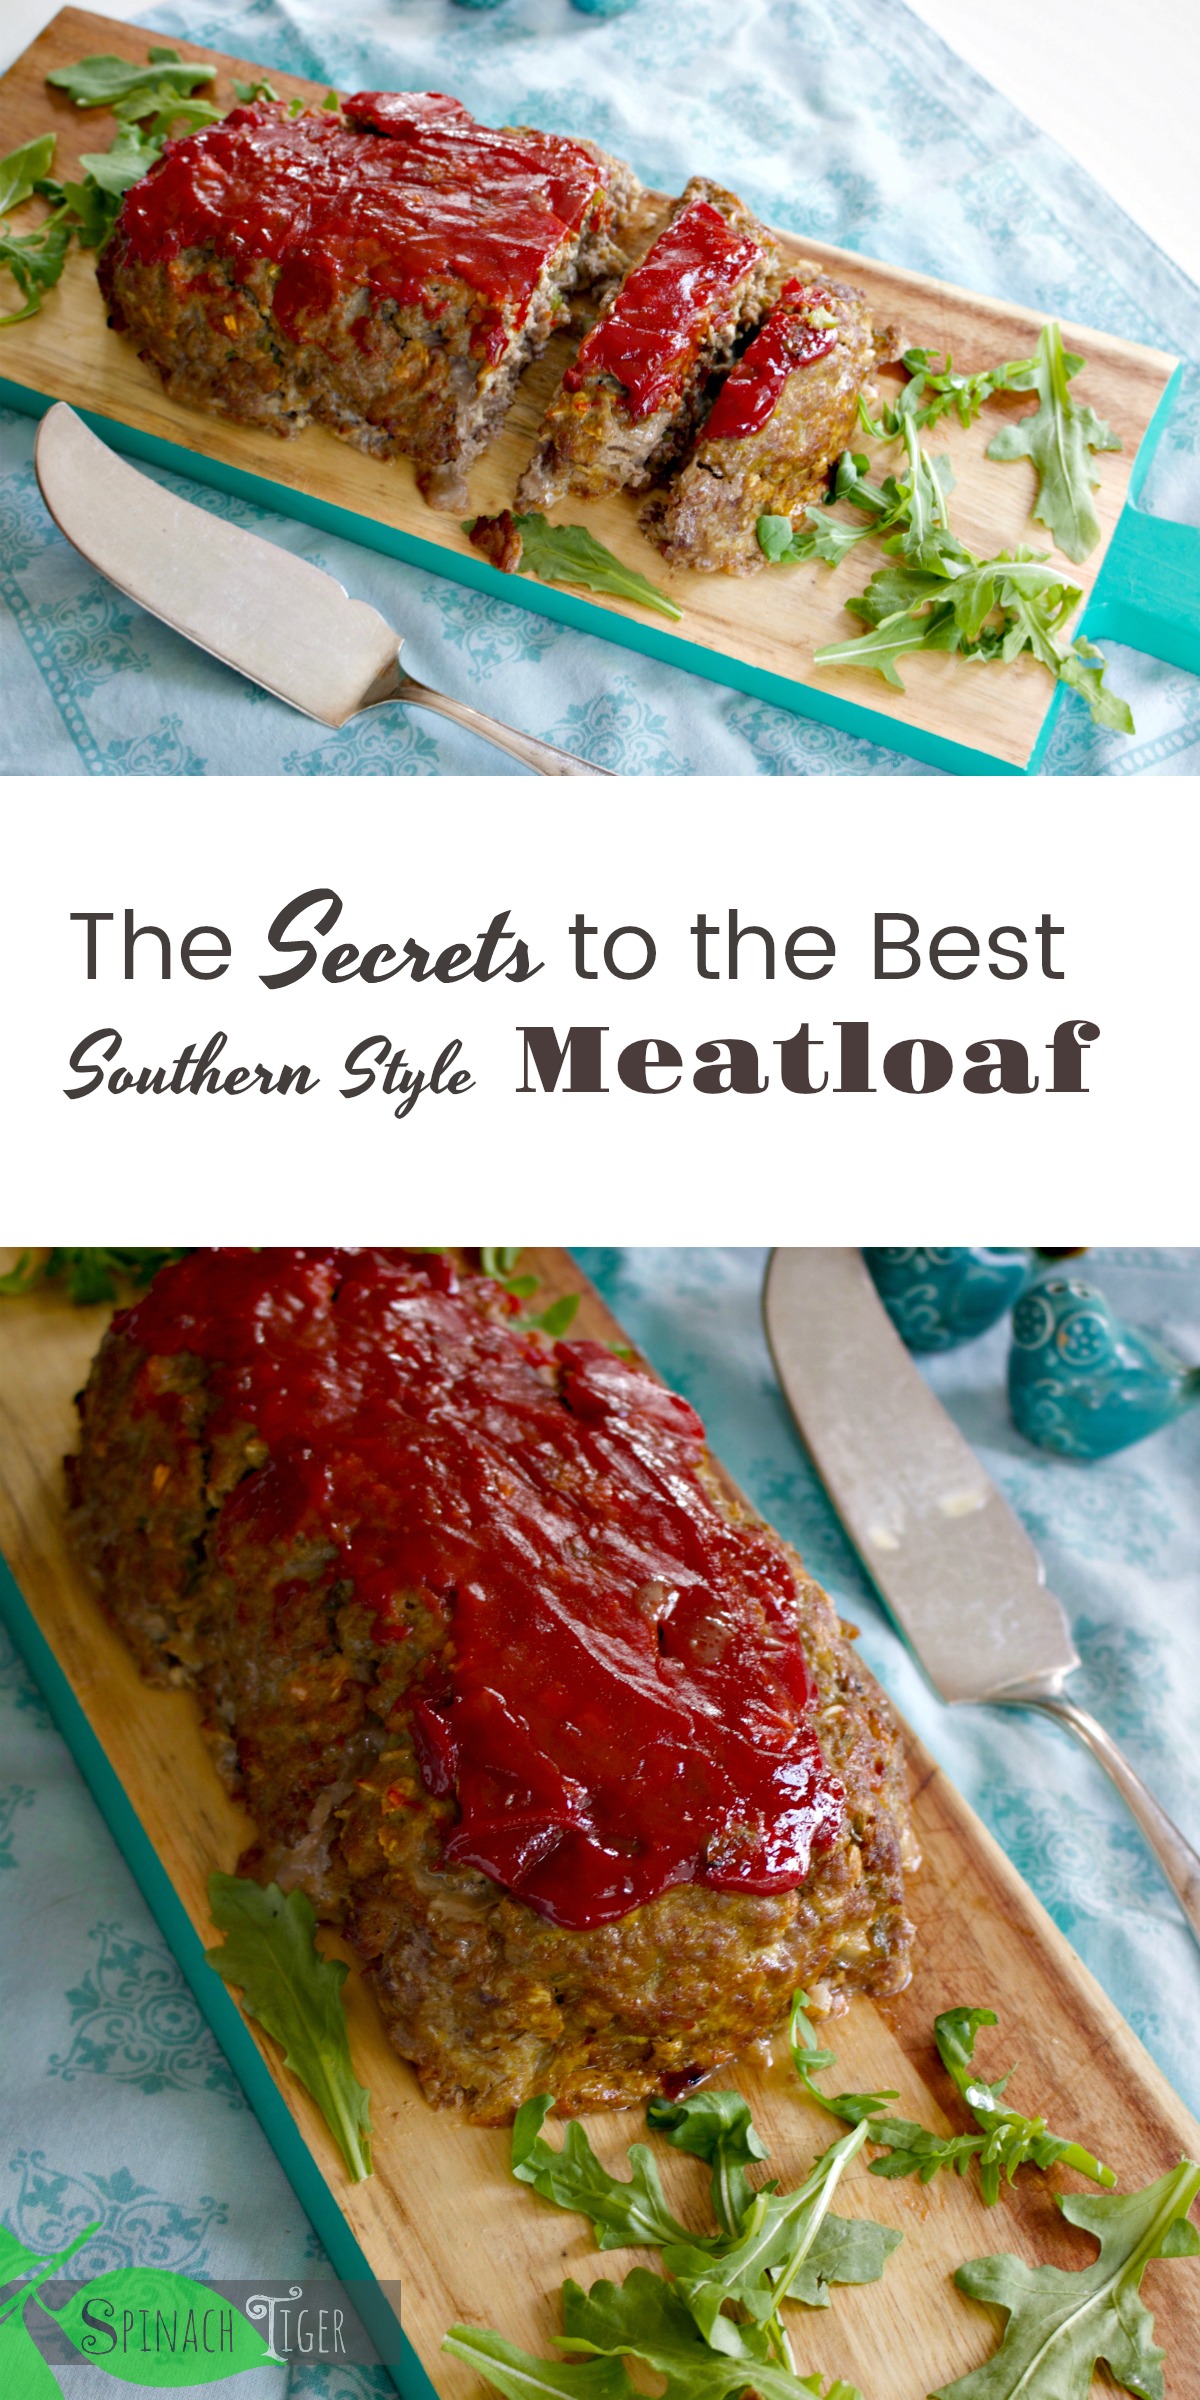 Best Southern Meatloaf